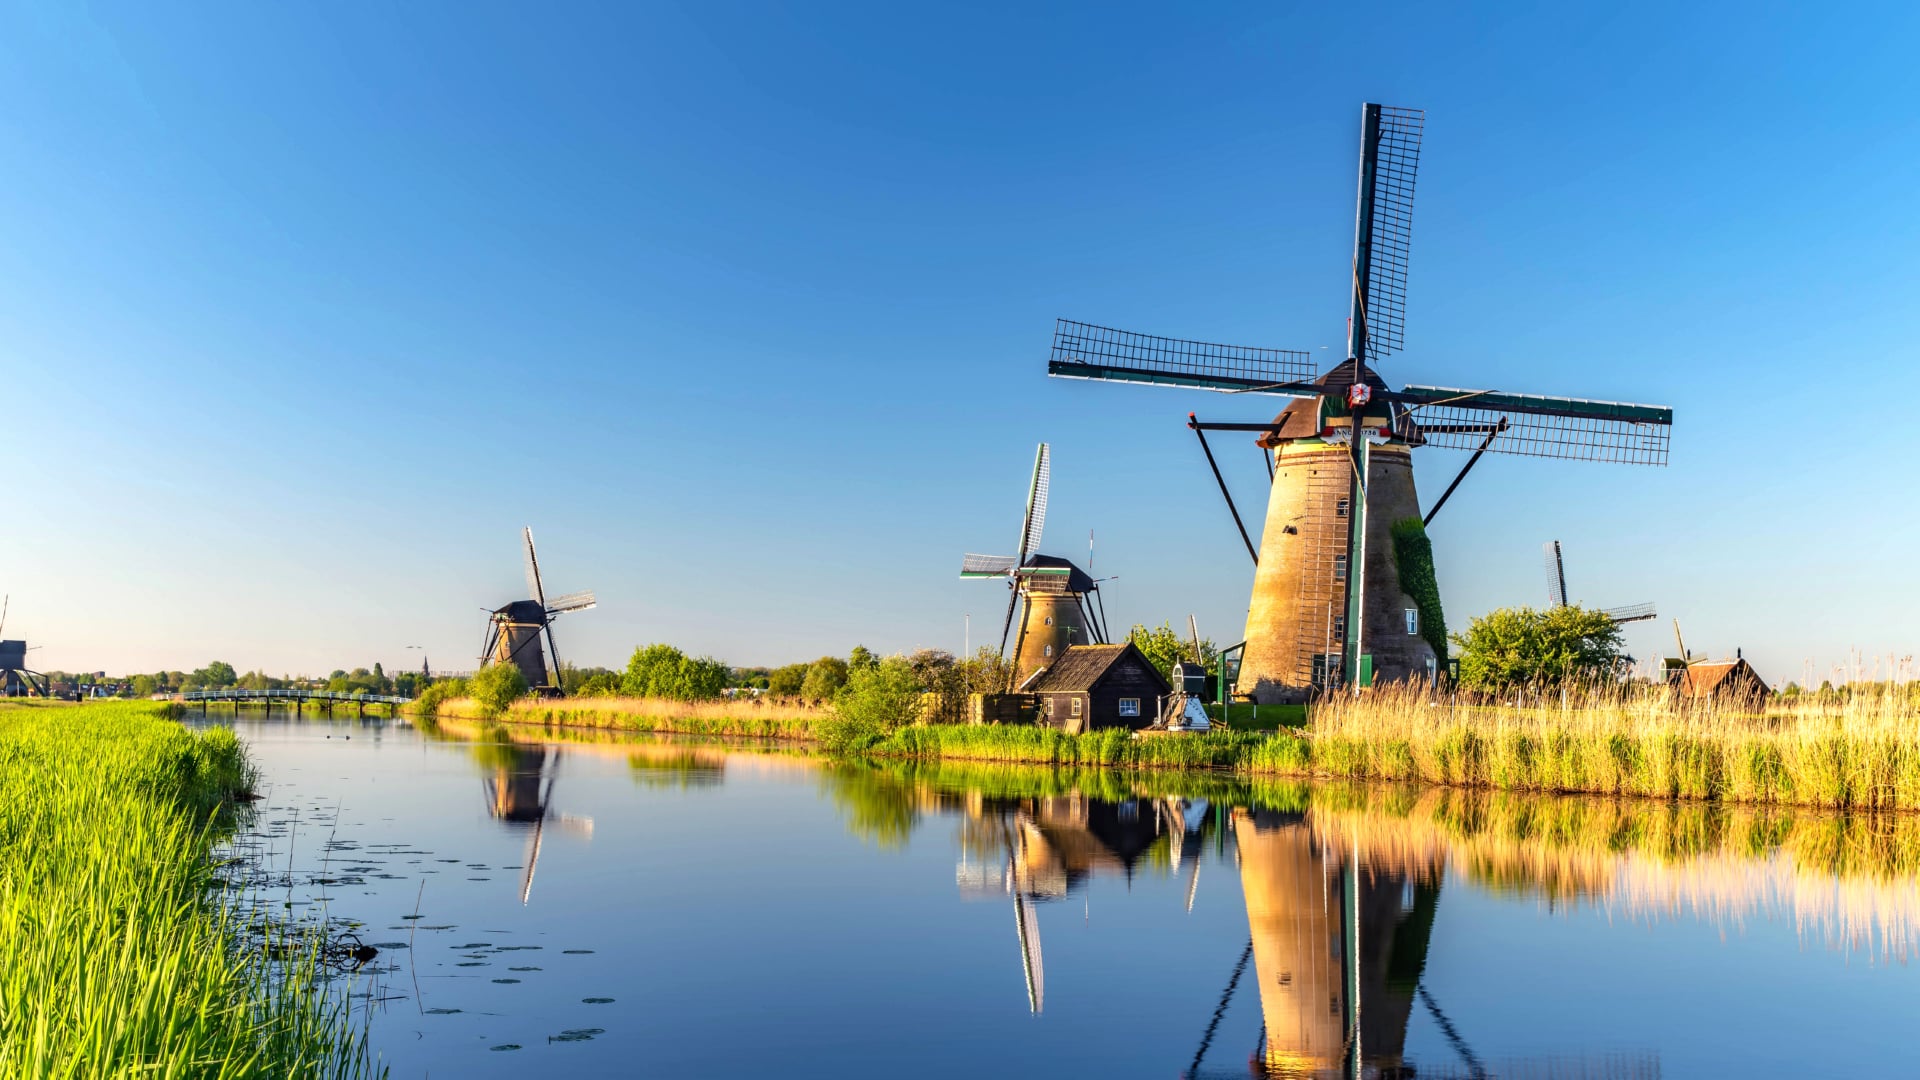 Windmills at Kinderdijk wallpapers HD quality